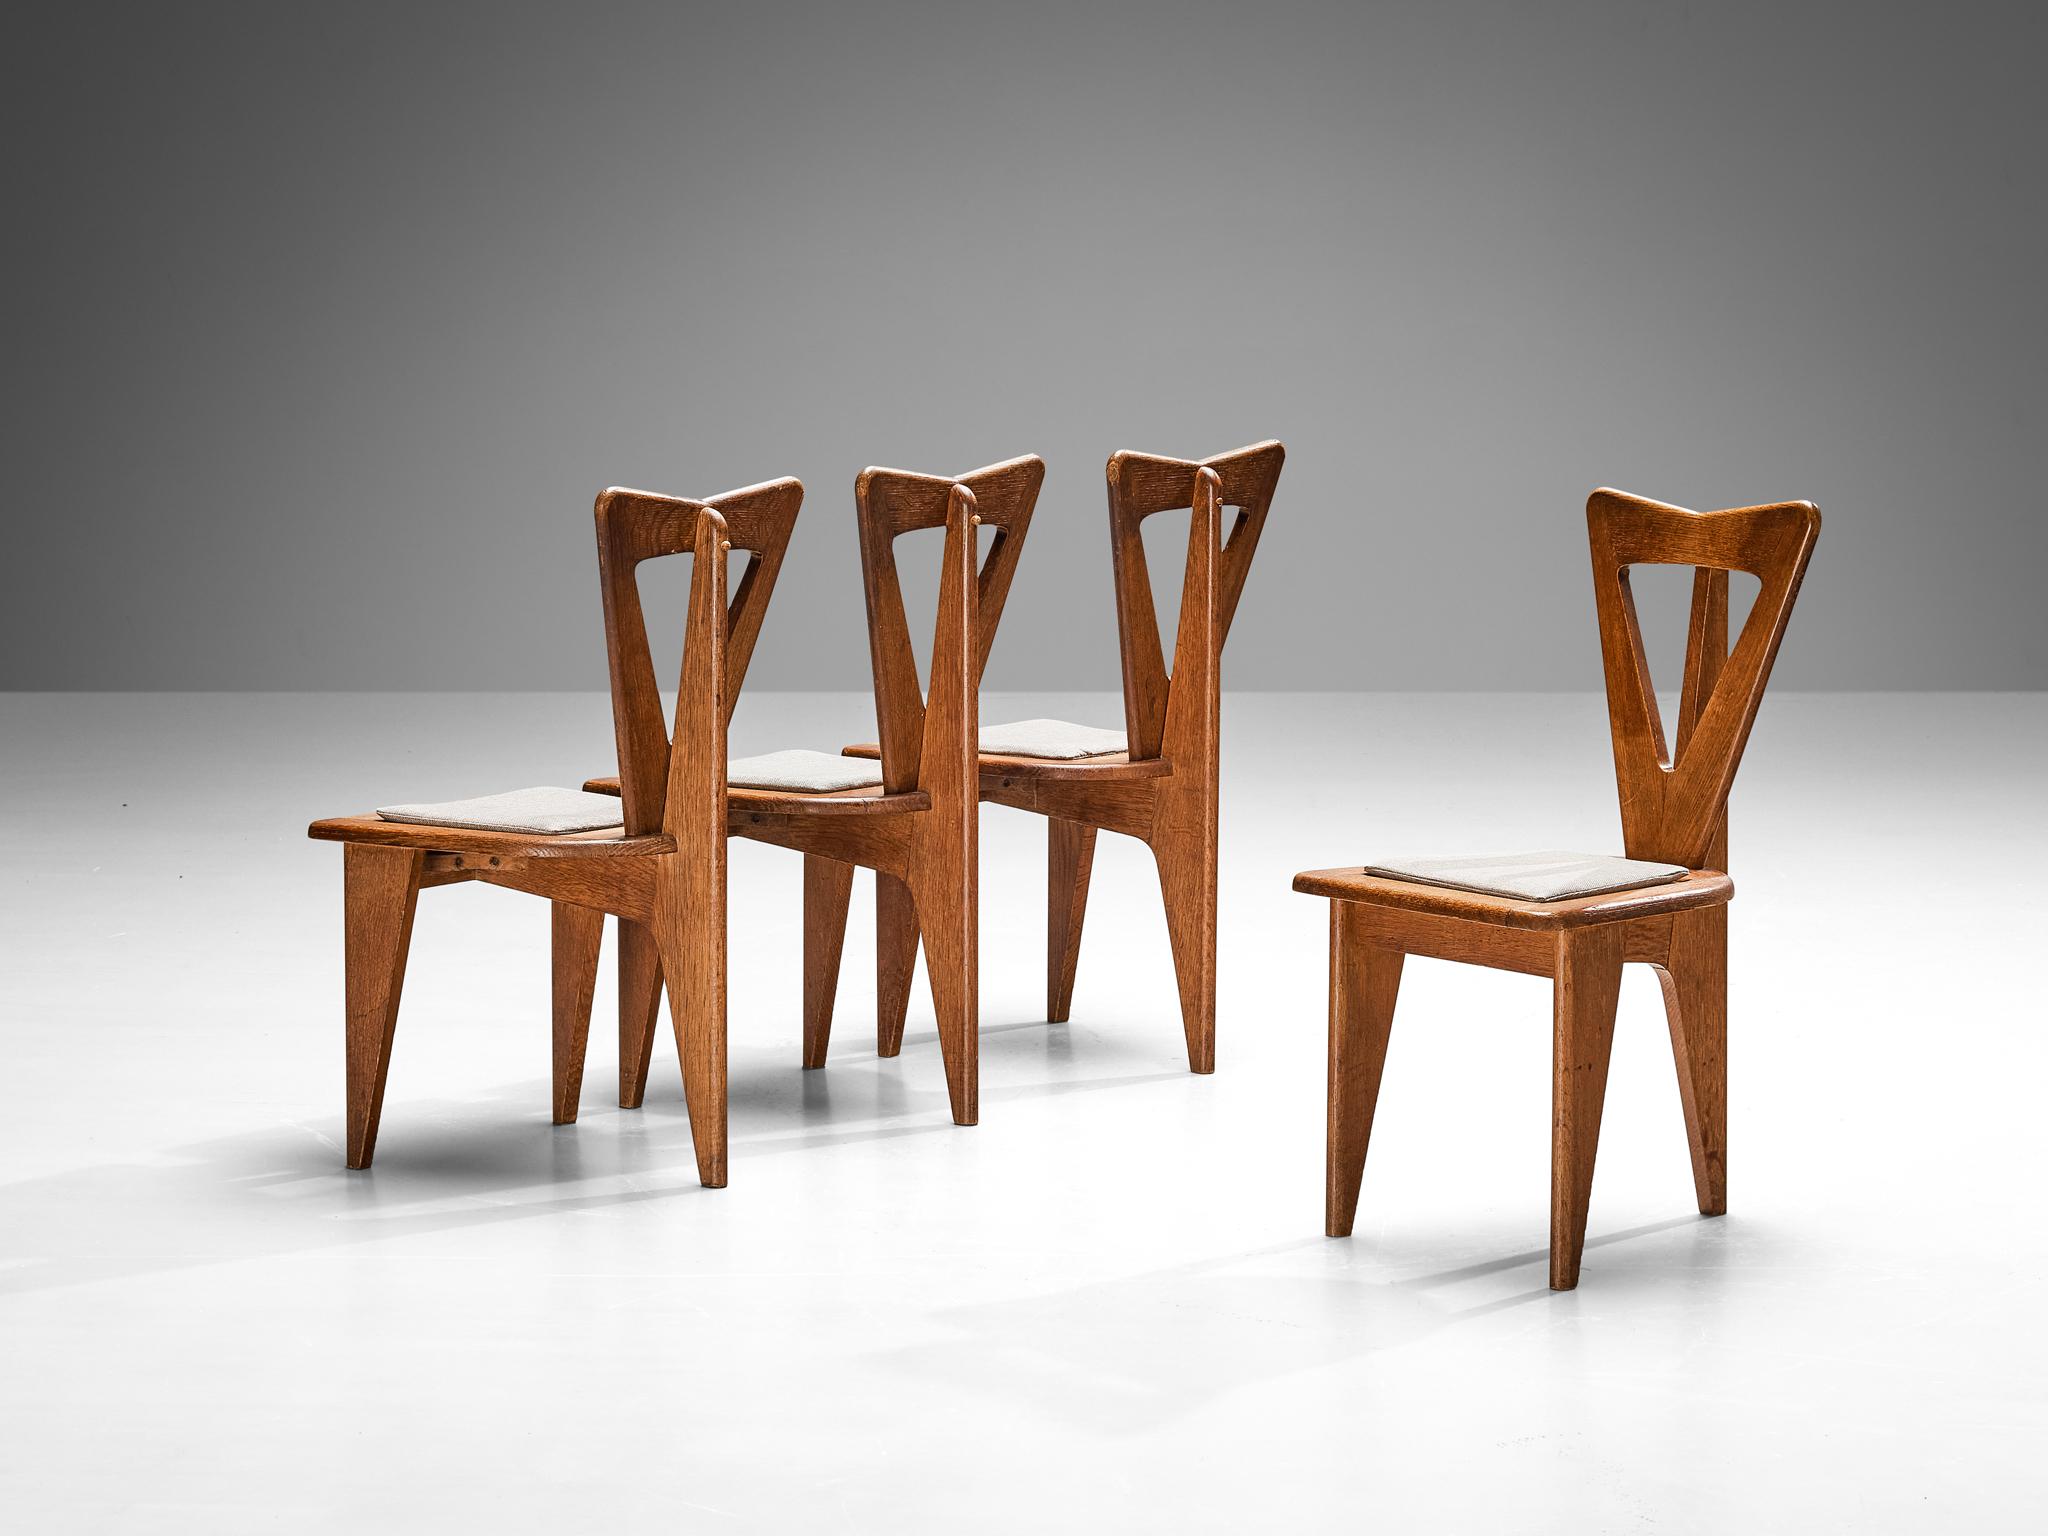 Ensemble de quatre chaises de salle à manger, chêne, tissu, France, années 1950

Captivantes tant par leur forme que par l'utilisation des matériaux, ces chaises de salle à manger françaises résonnent avec les principes de conception qui prévalaient